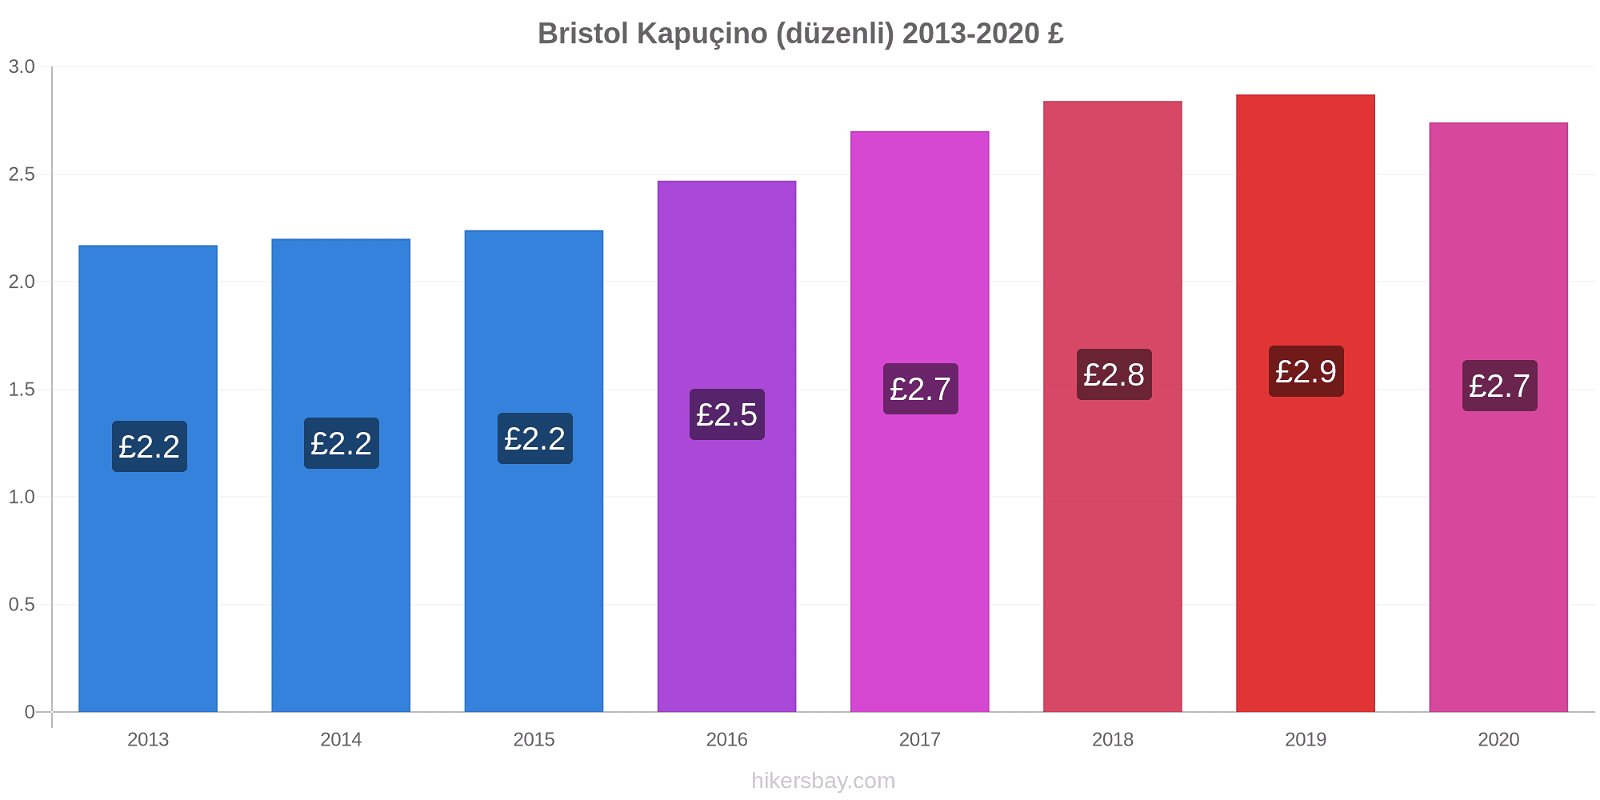 Bristol fiyat değişiklikleri Kapuçino (düzenli) hikersbay.com